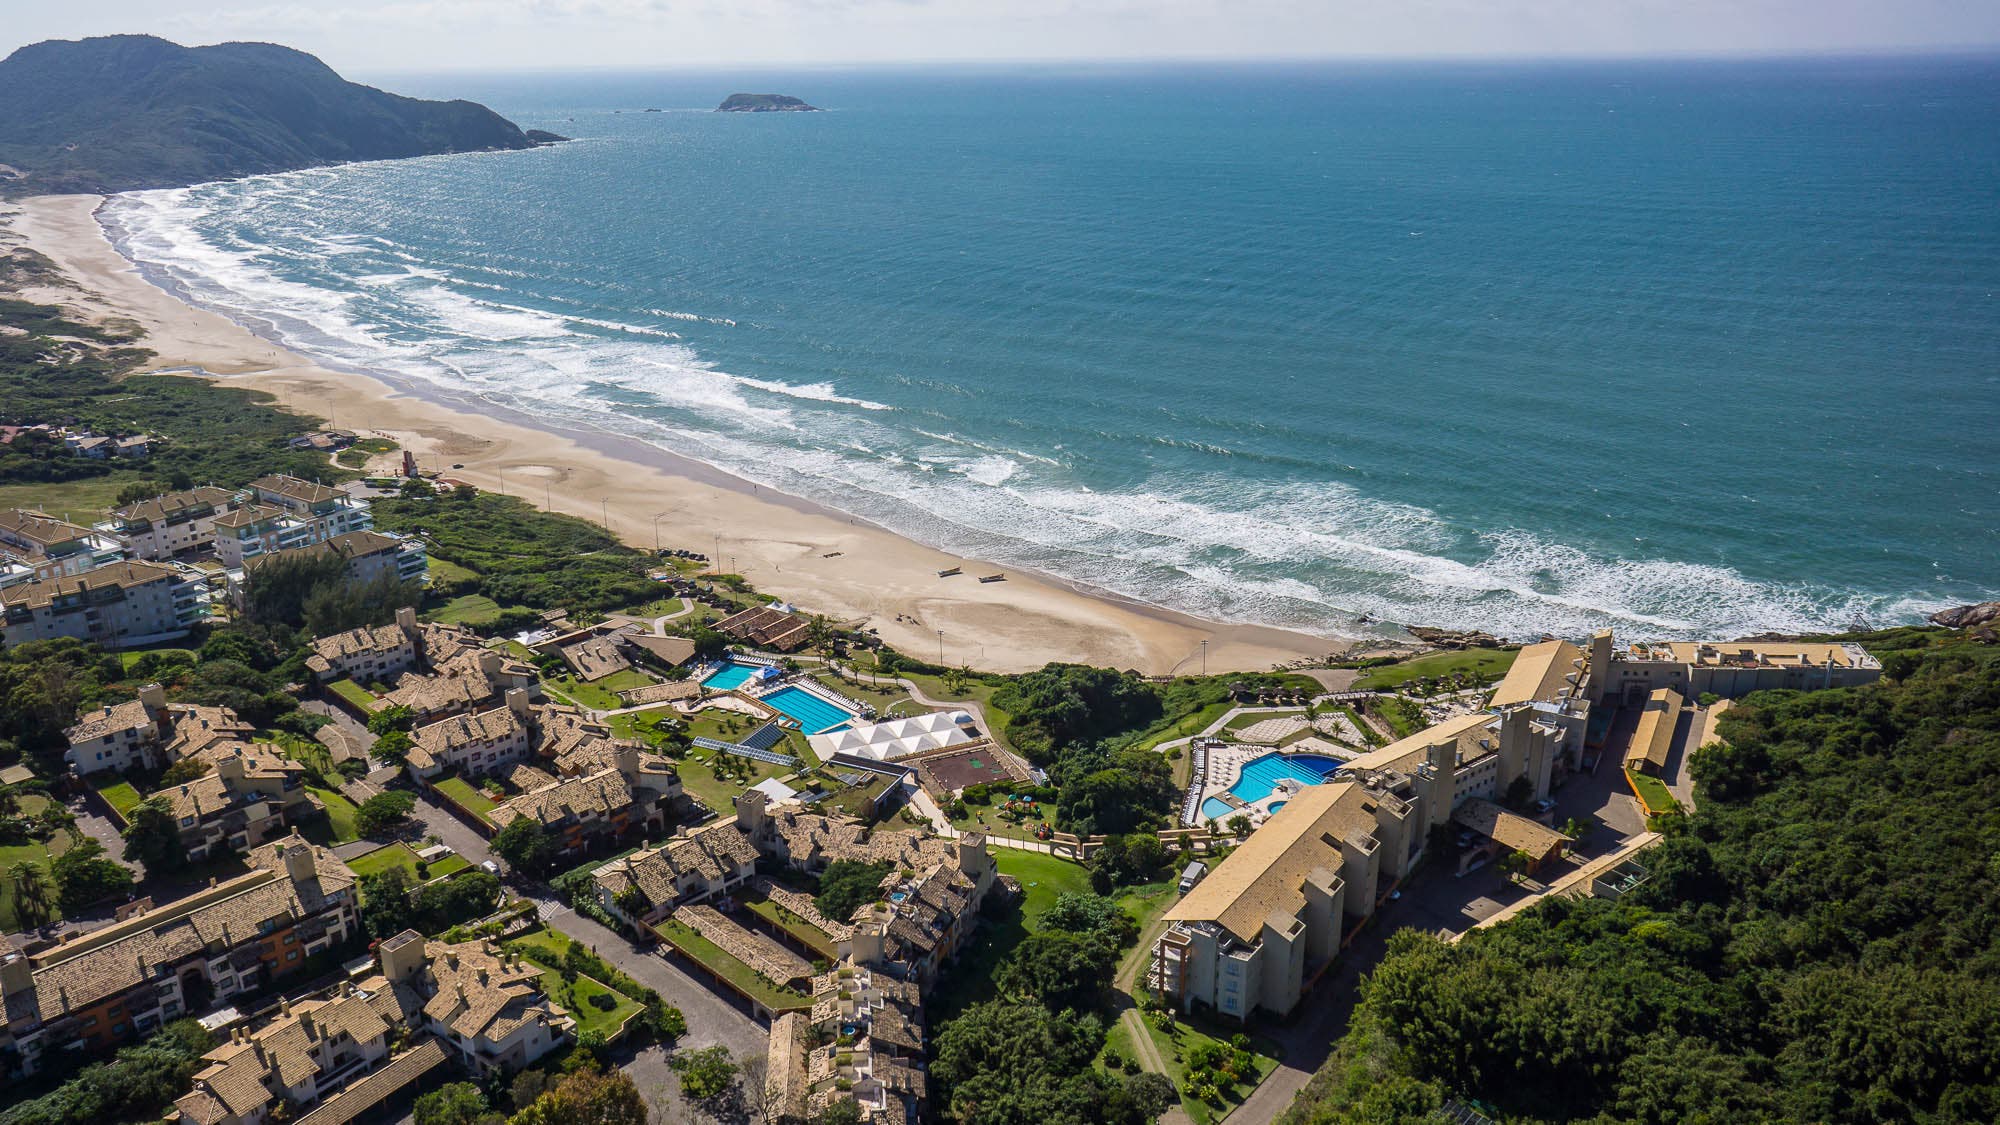 The Costão do Santinho resort in Florianópolis